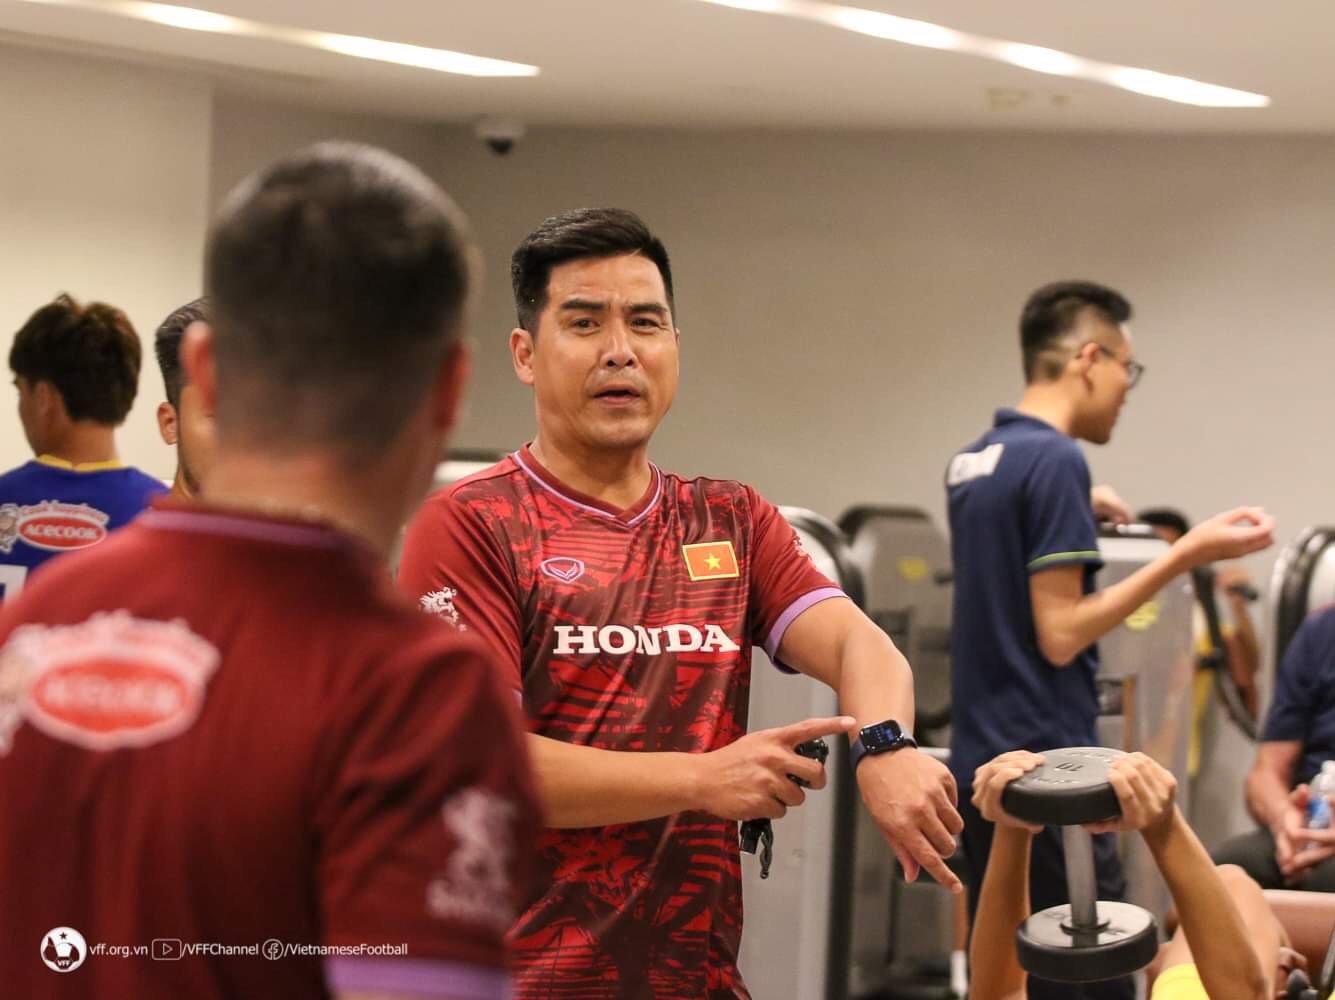 Trợ lý Nguyễn Việt Thắng cũng có mặt để hỗ trợ, quan sát cũng như nhắc nhở cầu thủ.